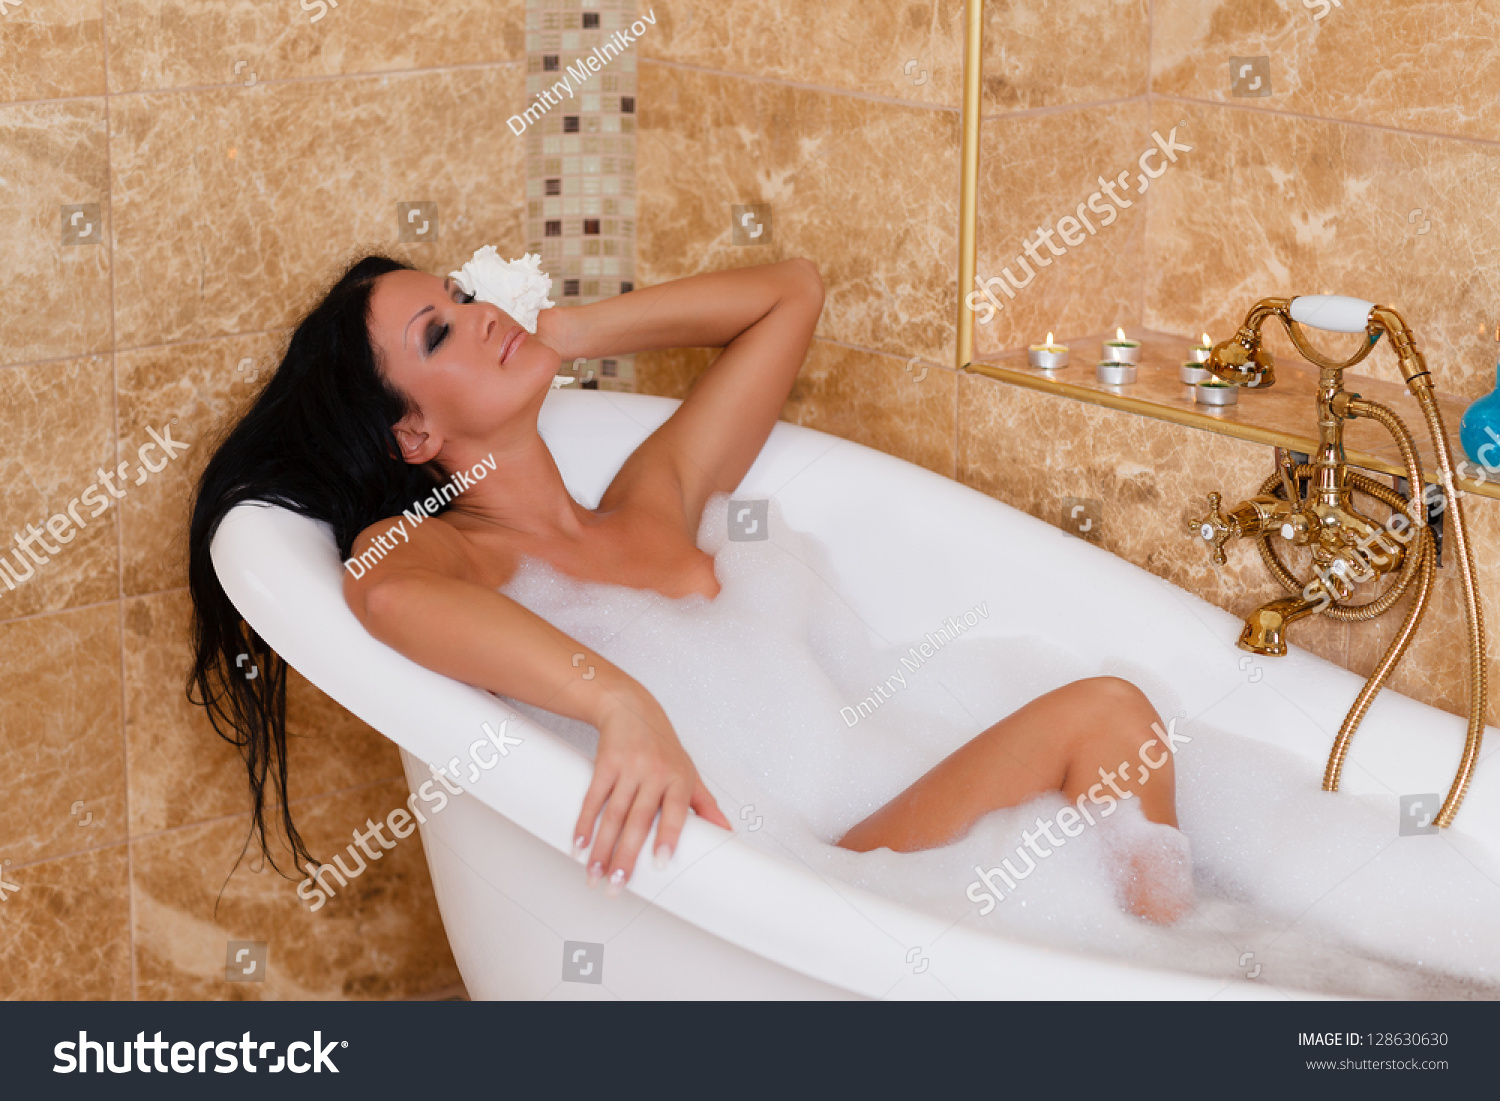 Толстая мамка моется в ванной и демонстрирует здоровые дойки